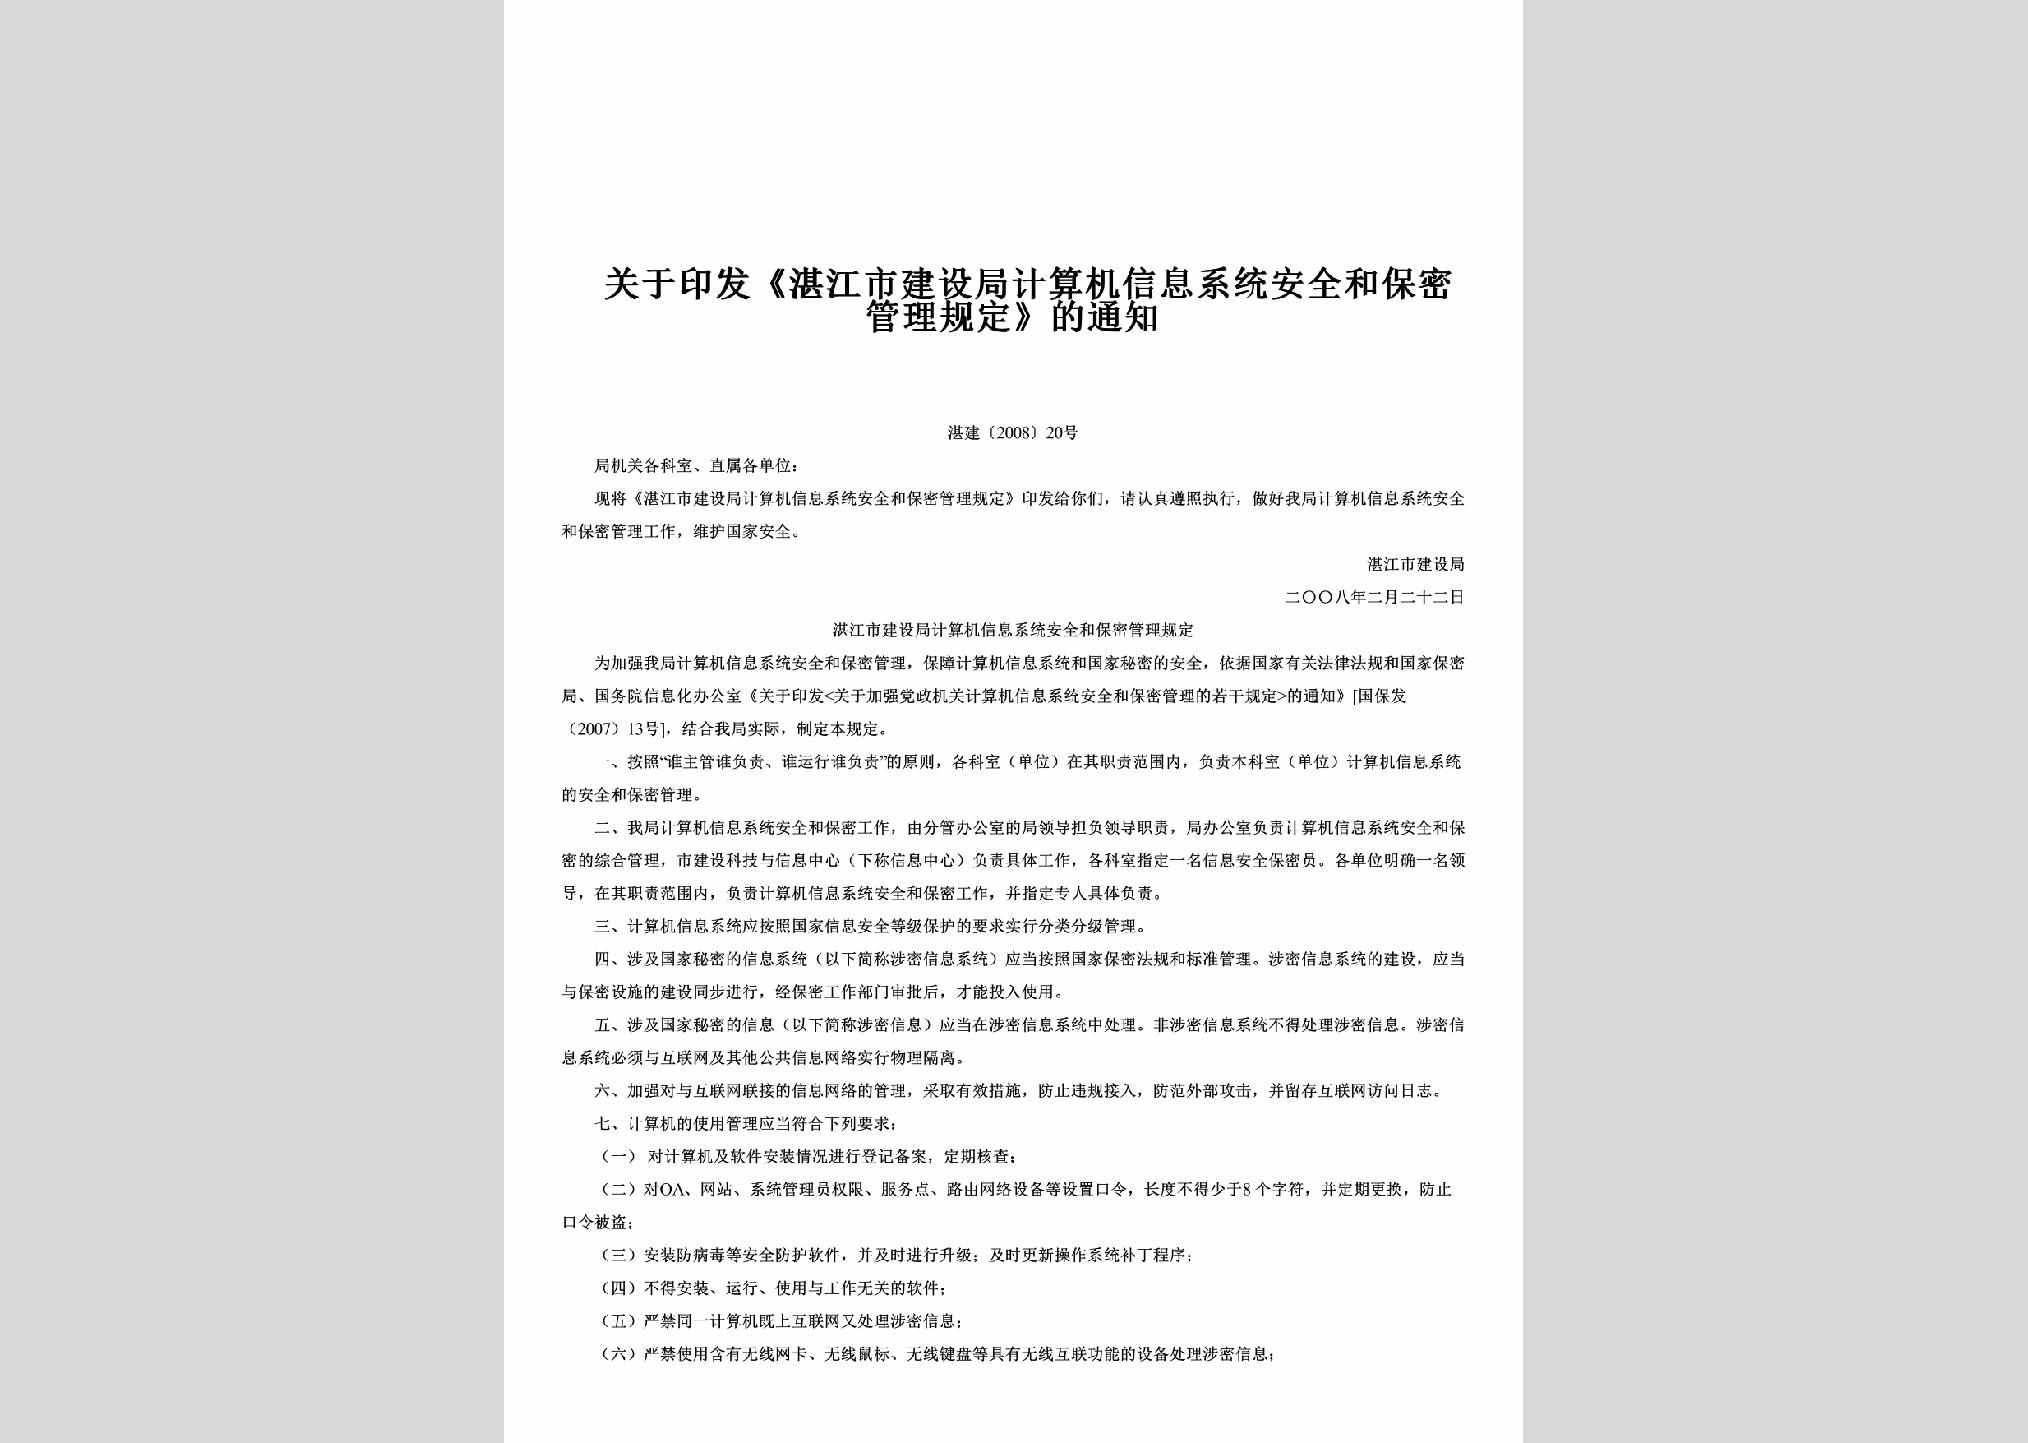 湛建[2008]20号：关于印发《湛江市建设局计算机信息系统安全和保密管理规定》的通知